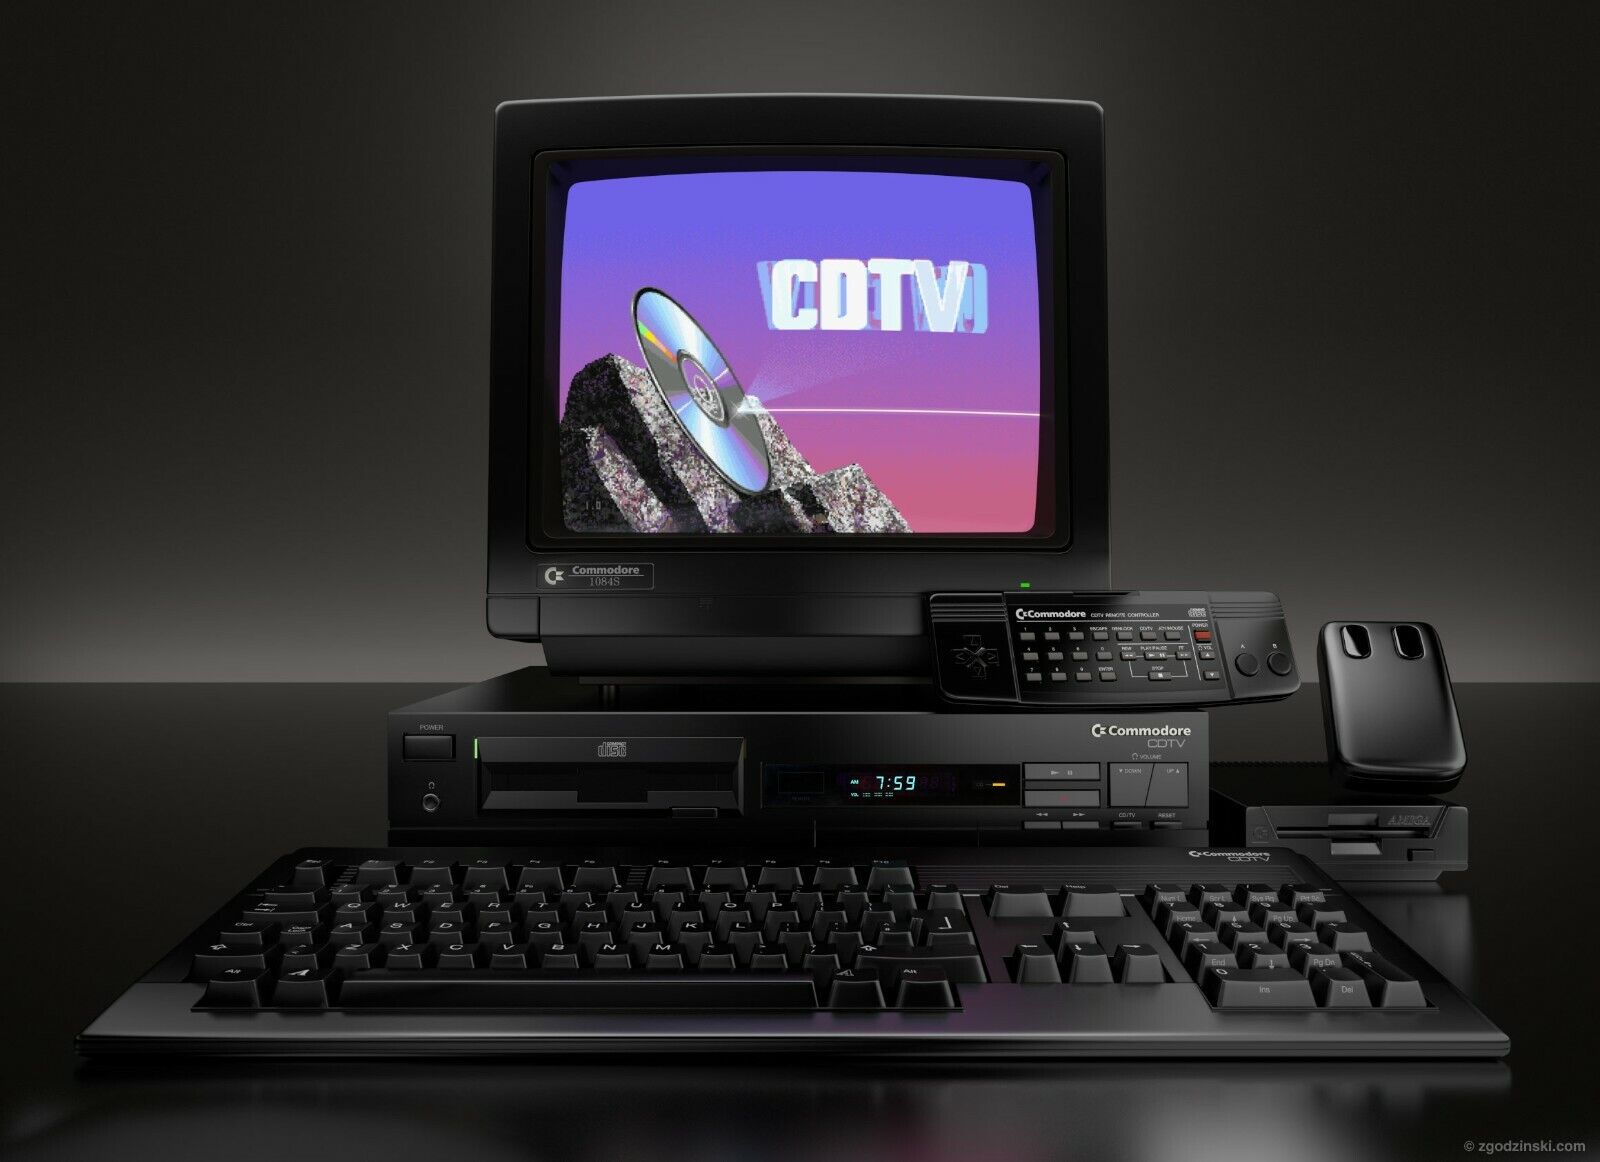 C= Amiga CDTV: Commodore Amiga CDTV